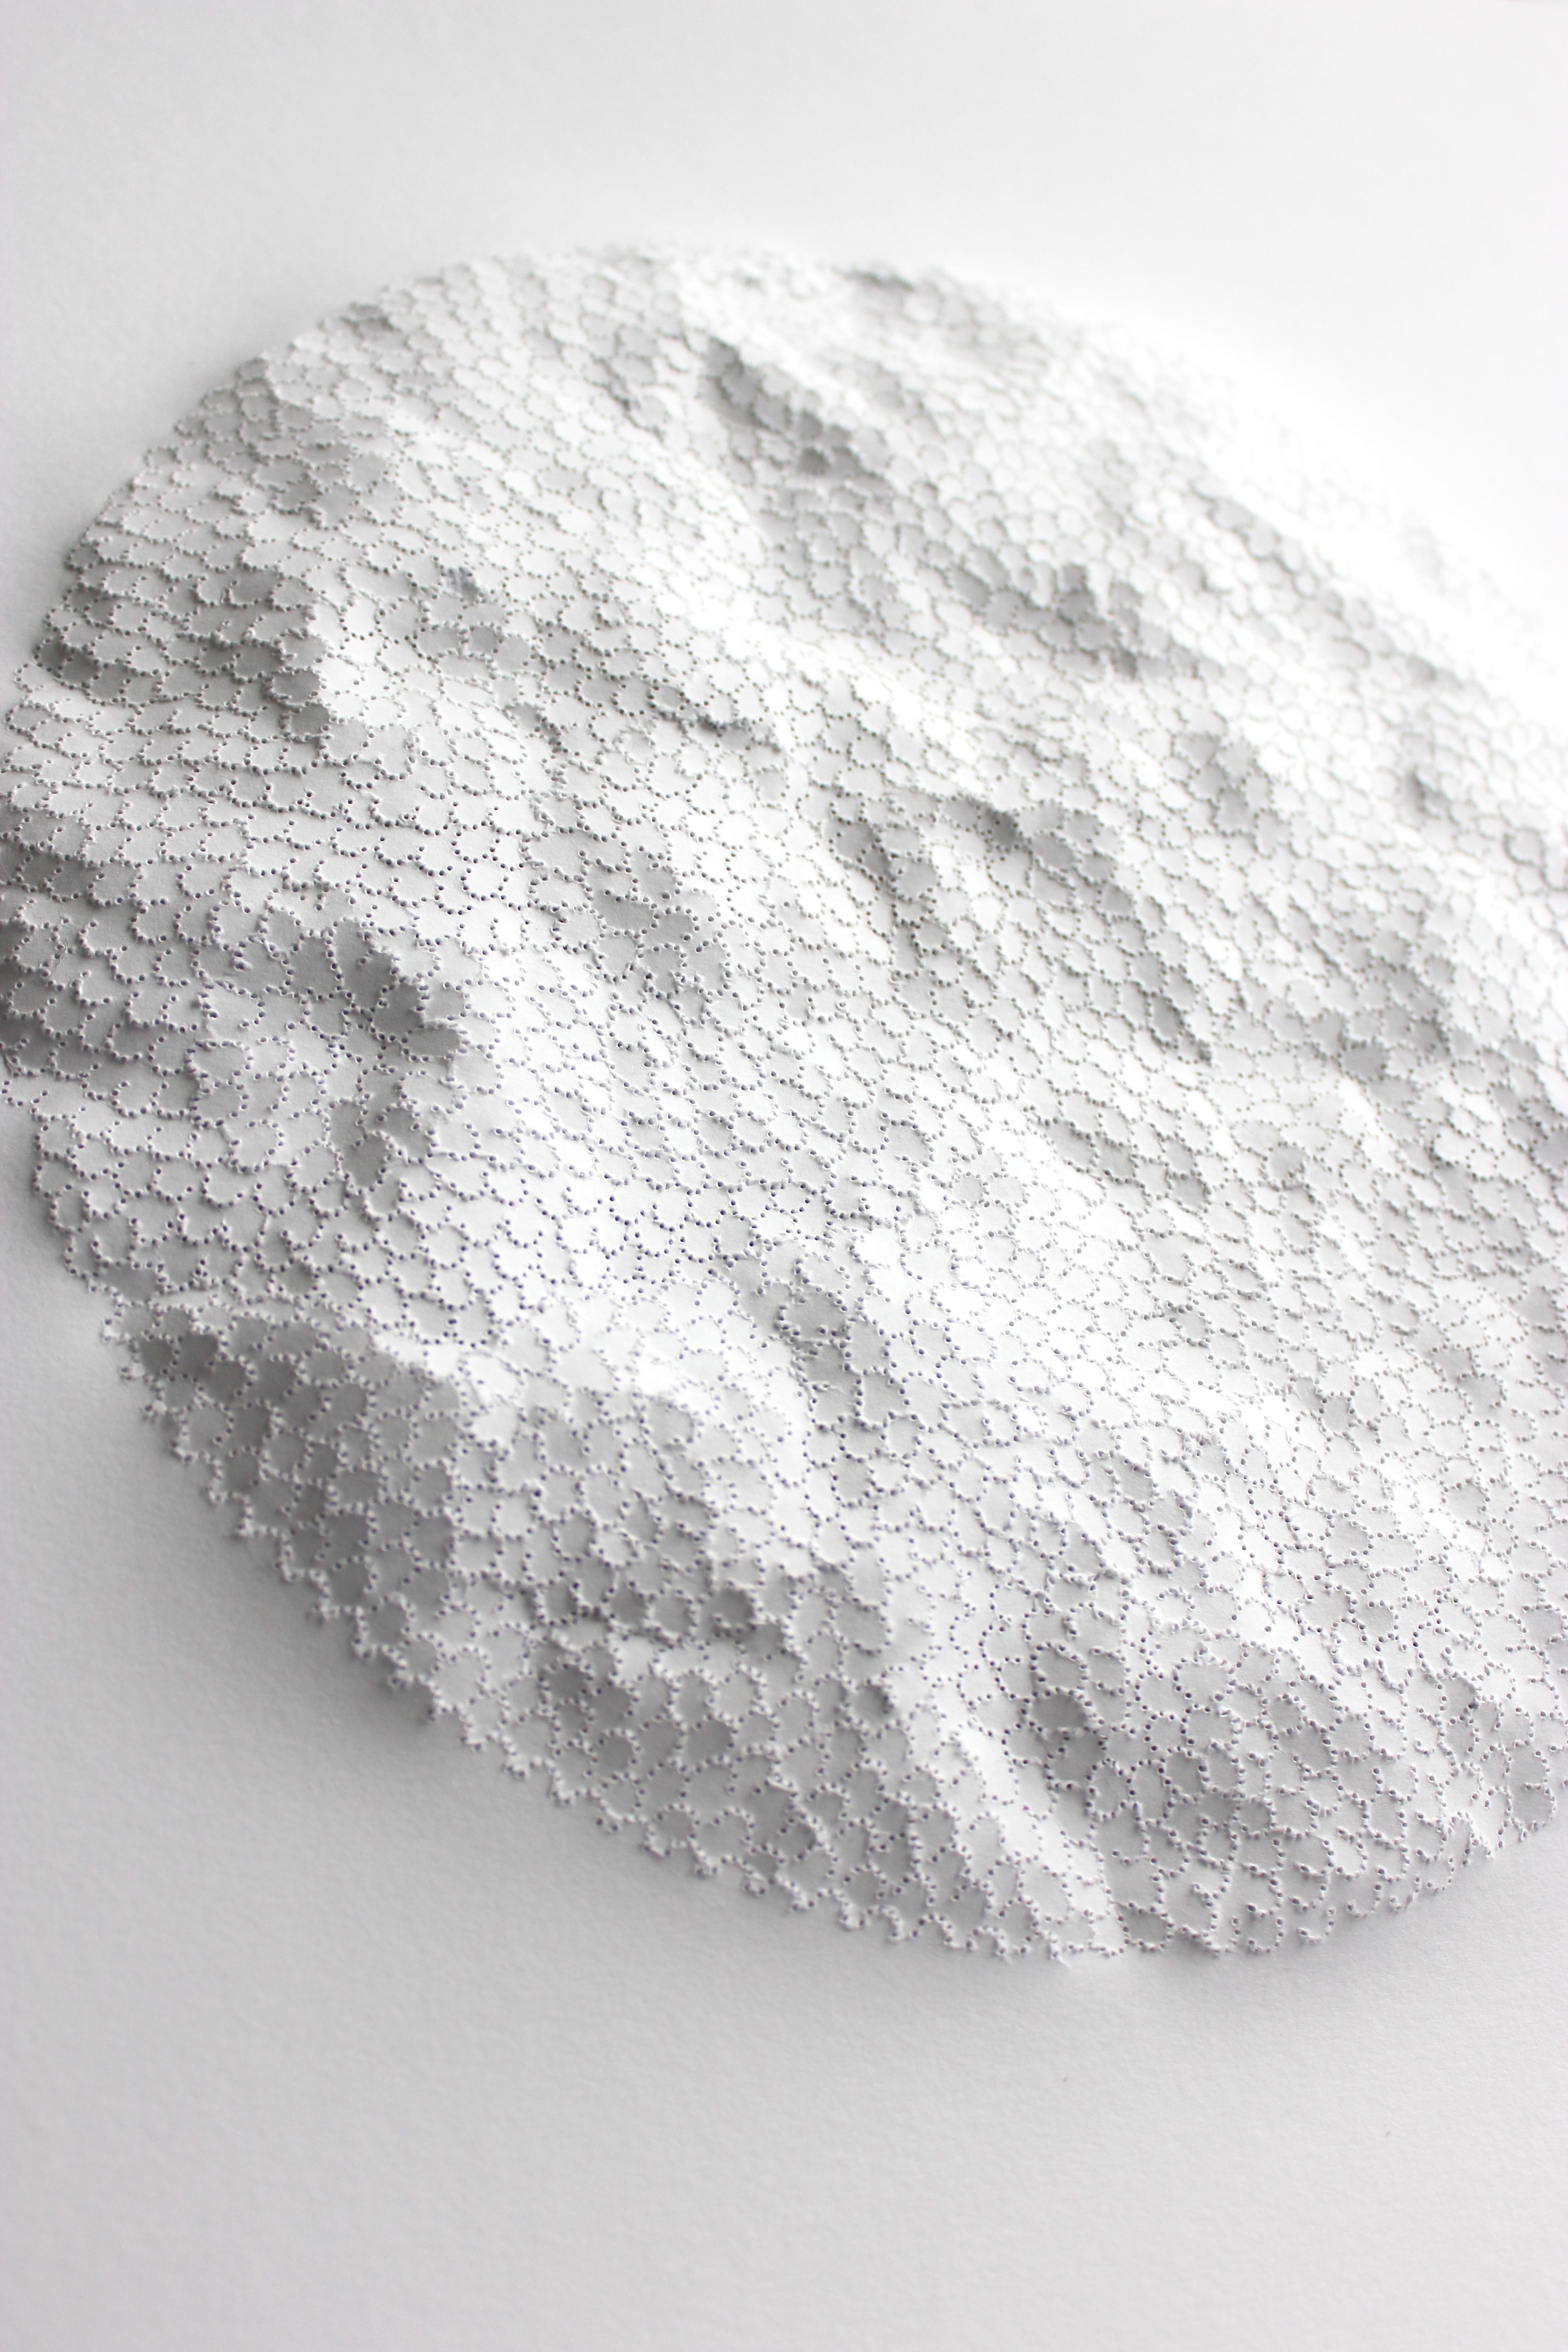 White Moon EC 17 - rundes texturiertes abstraktes von der Nature inspiriertes 3D-Skulpturpapier – Art von Anne-Charlotte Saliba